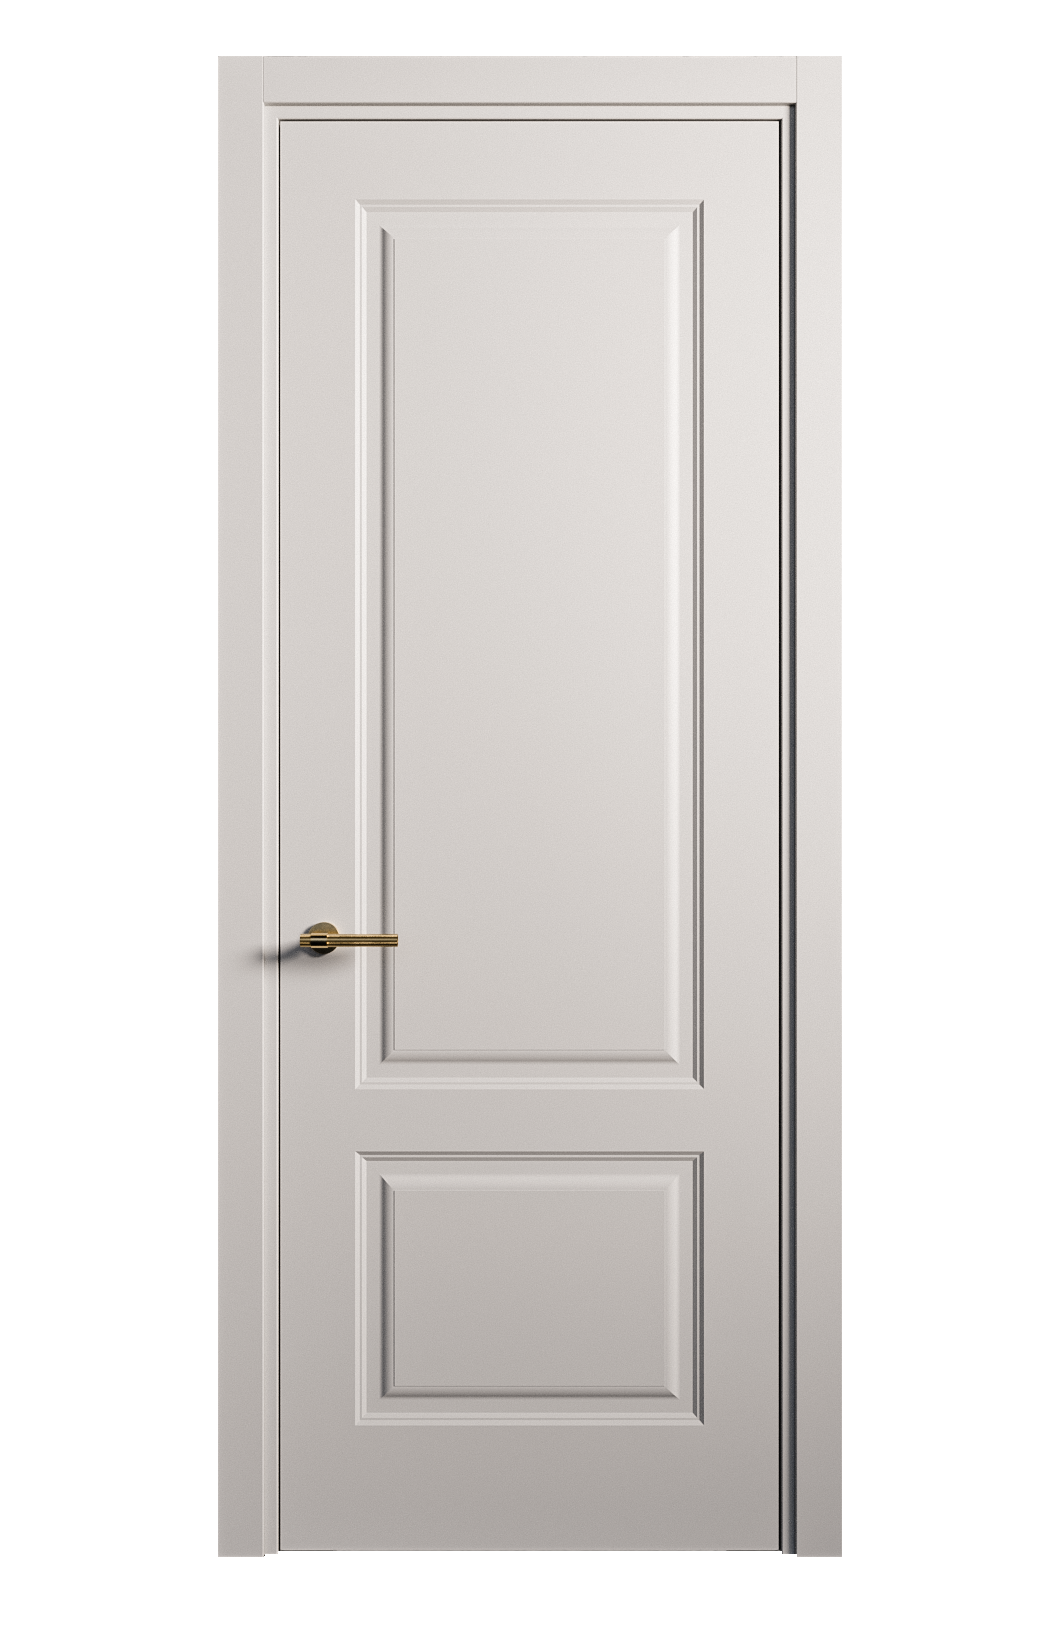 Межкомнатная дверь Вита-1 глухая эмаль ral 7047 26271